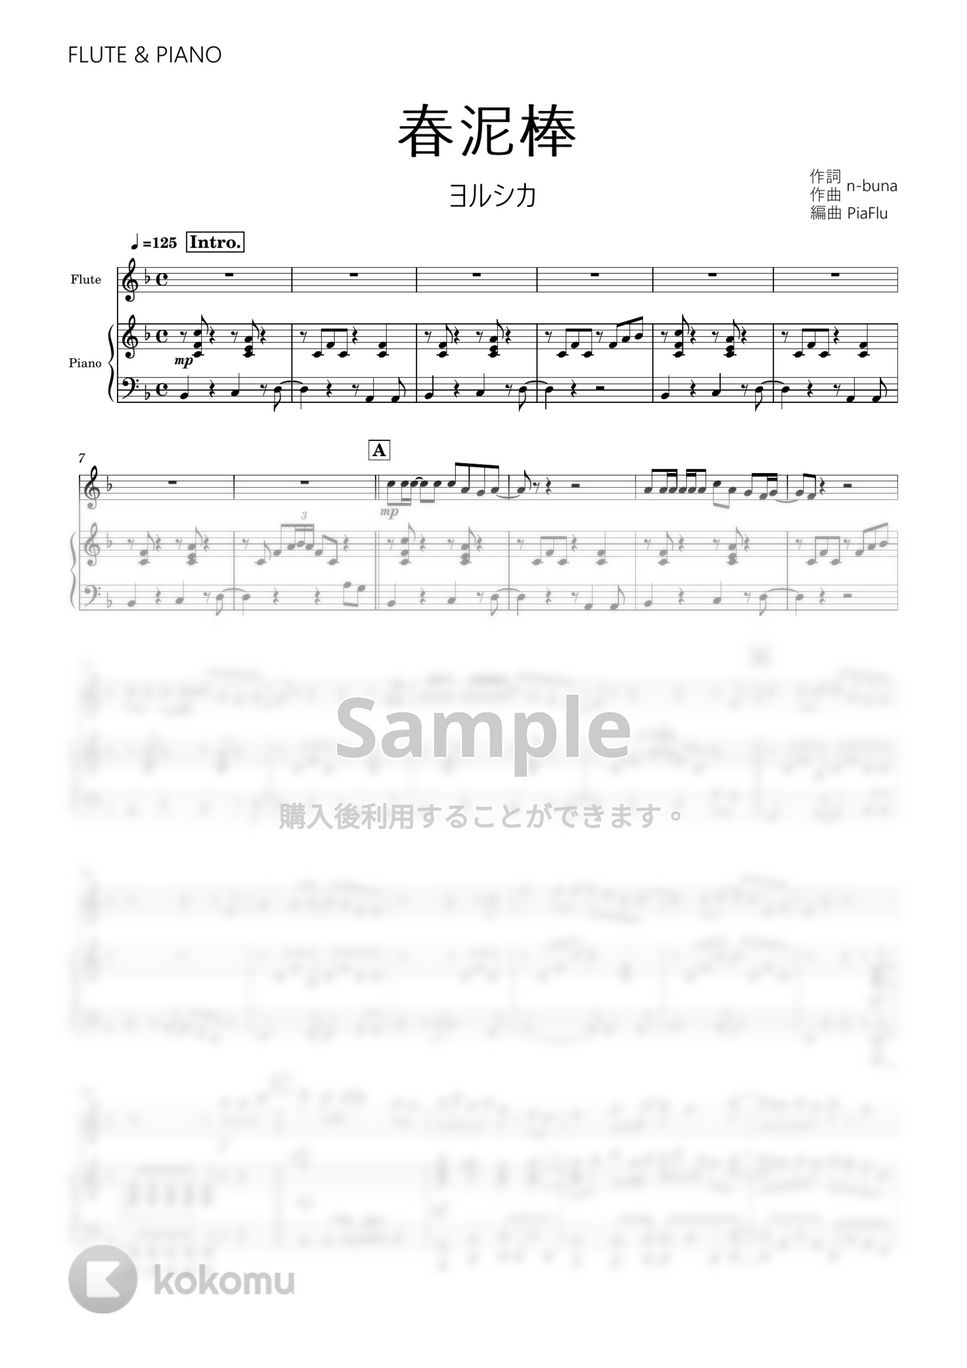 ヨルシカ - 春泥棒 (フルート&ピアノ伴奏) by PiaFlu